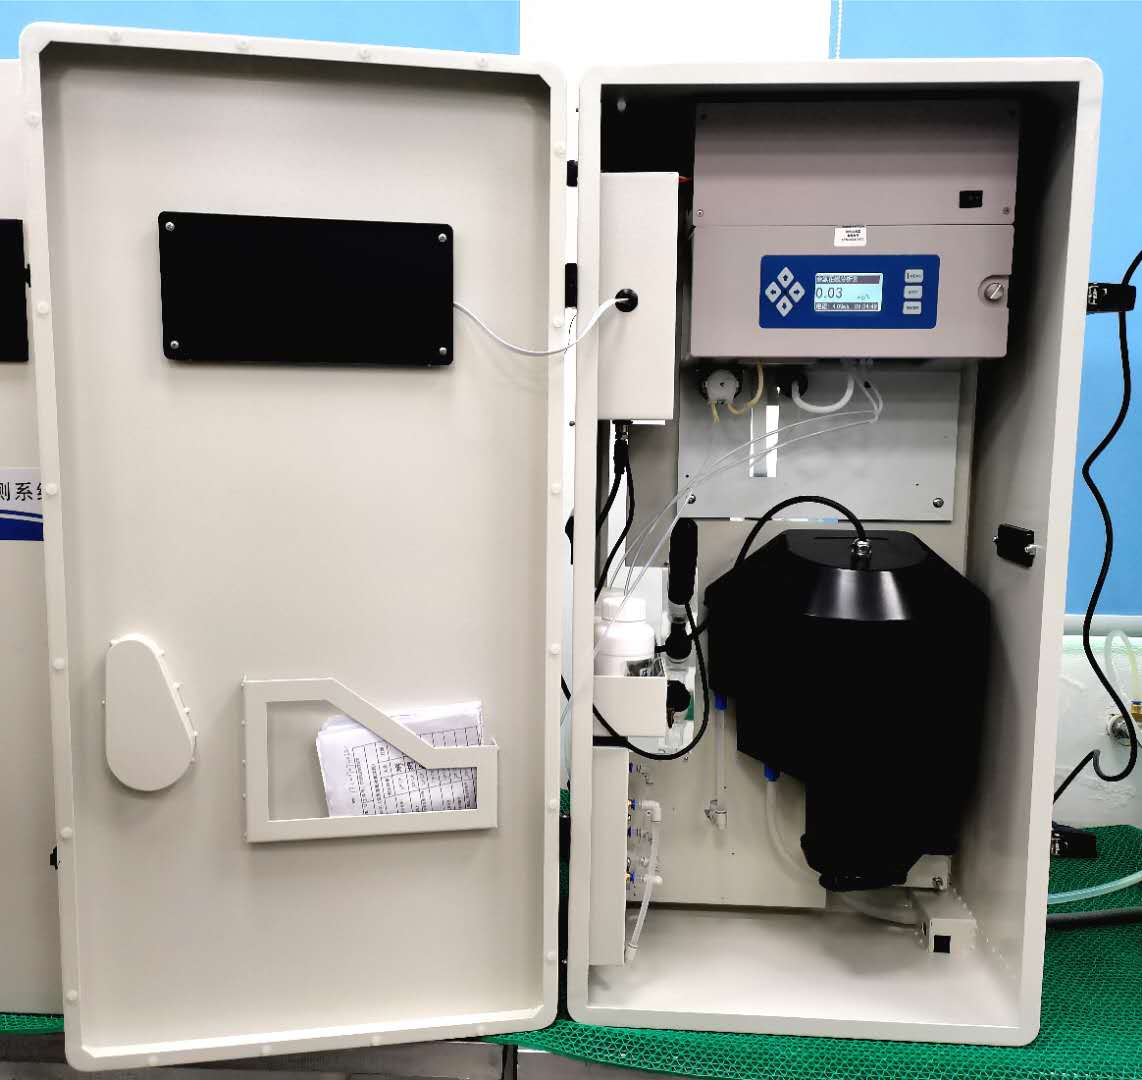 PWQ-2000 Sistema de Monitoreo de la Calidad del Agua Potable del Grifo (Método de Electrodo)